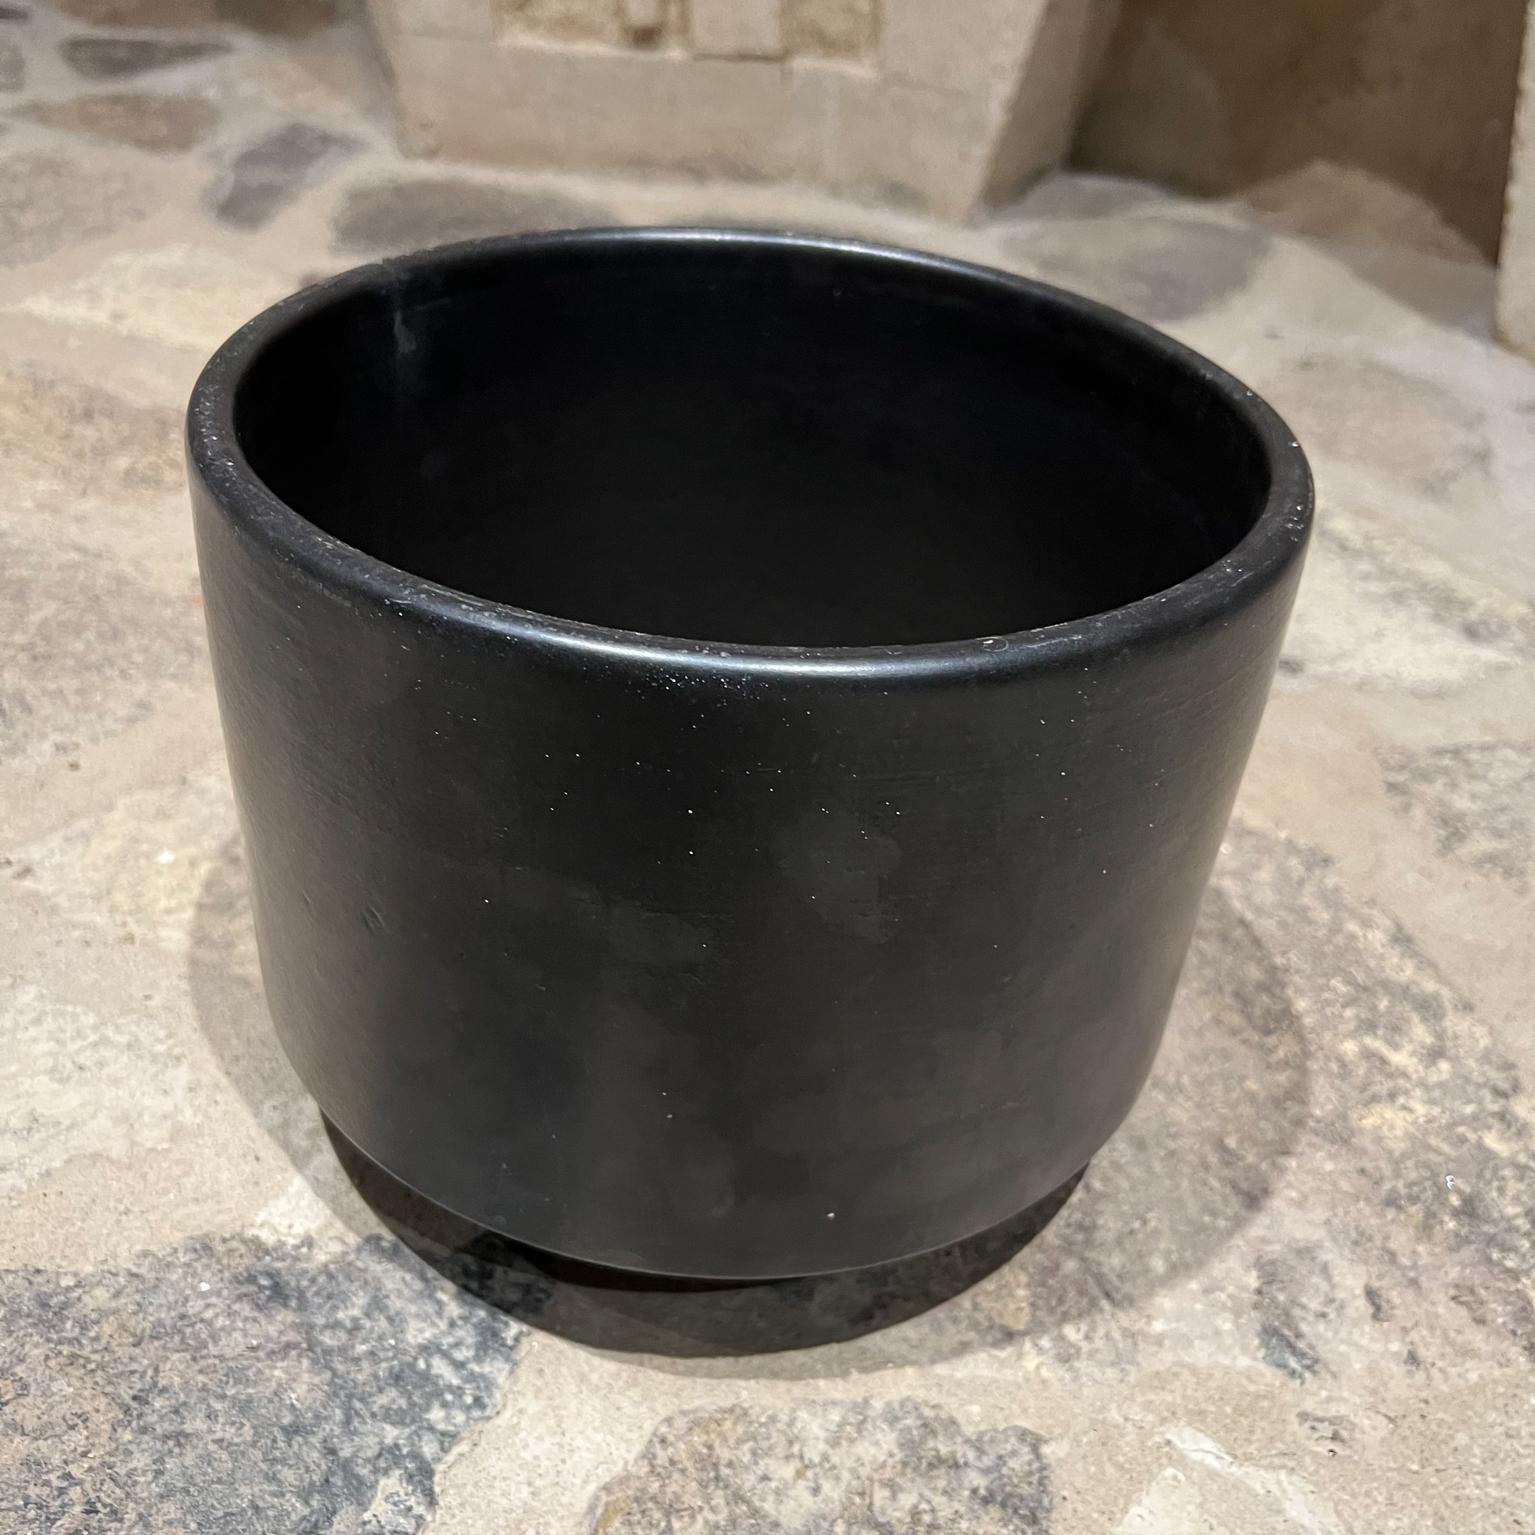 1960s Modern Planter Pot Small Black La Verne, Calif Architectural Pottery In Good Condition For Sale In Chula Vista, CA